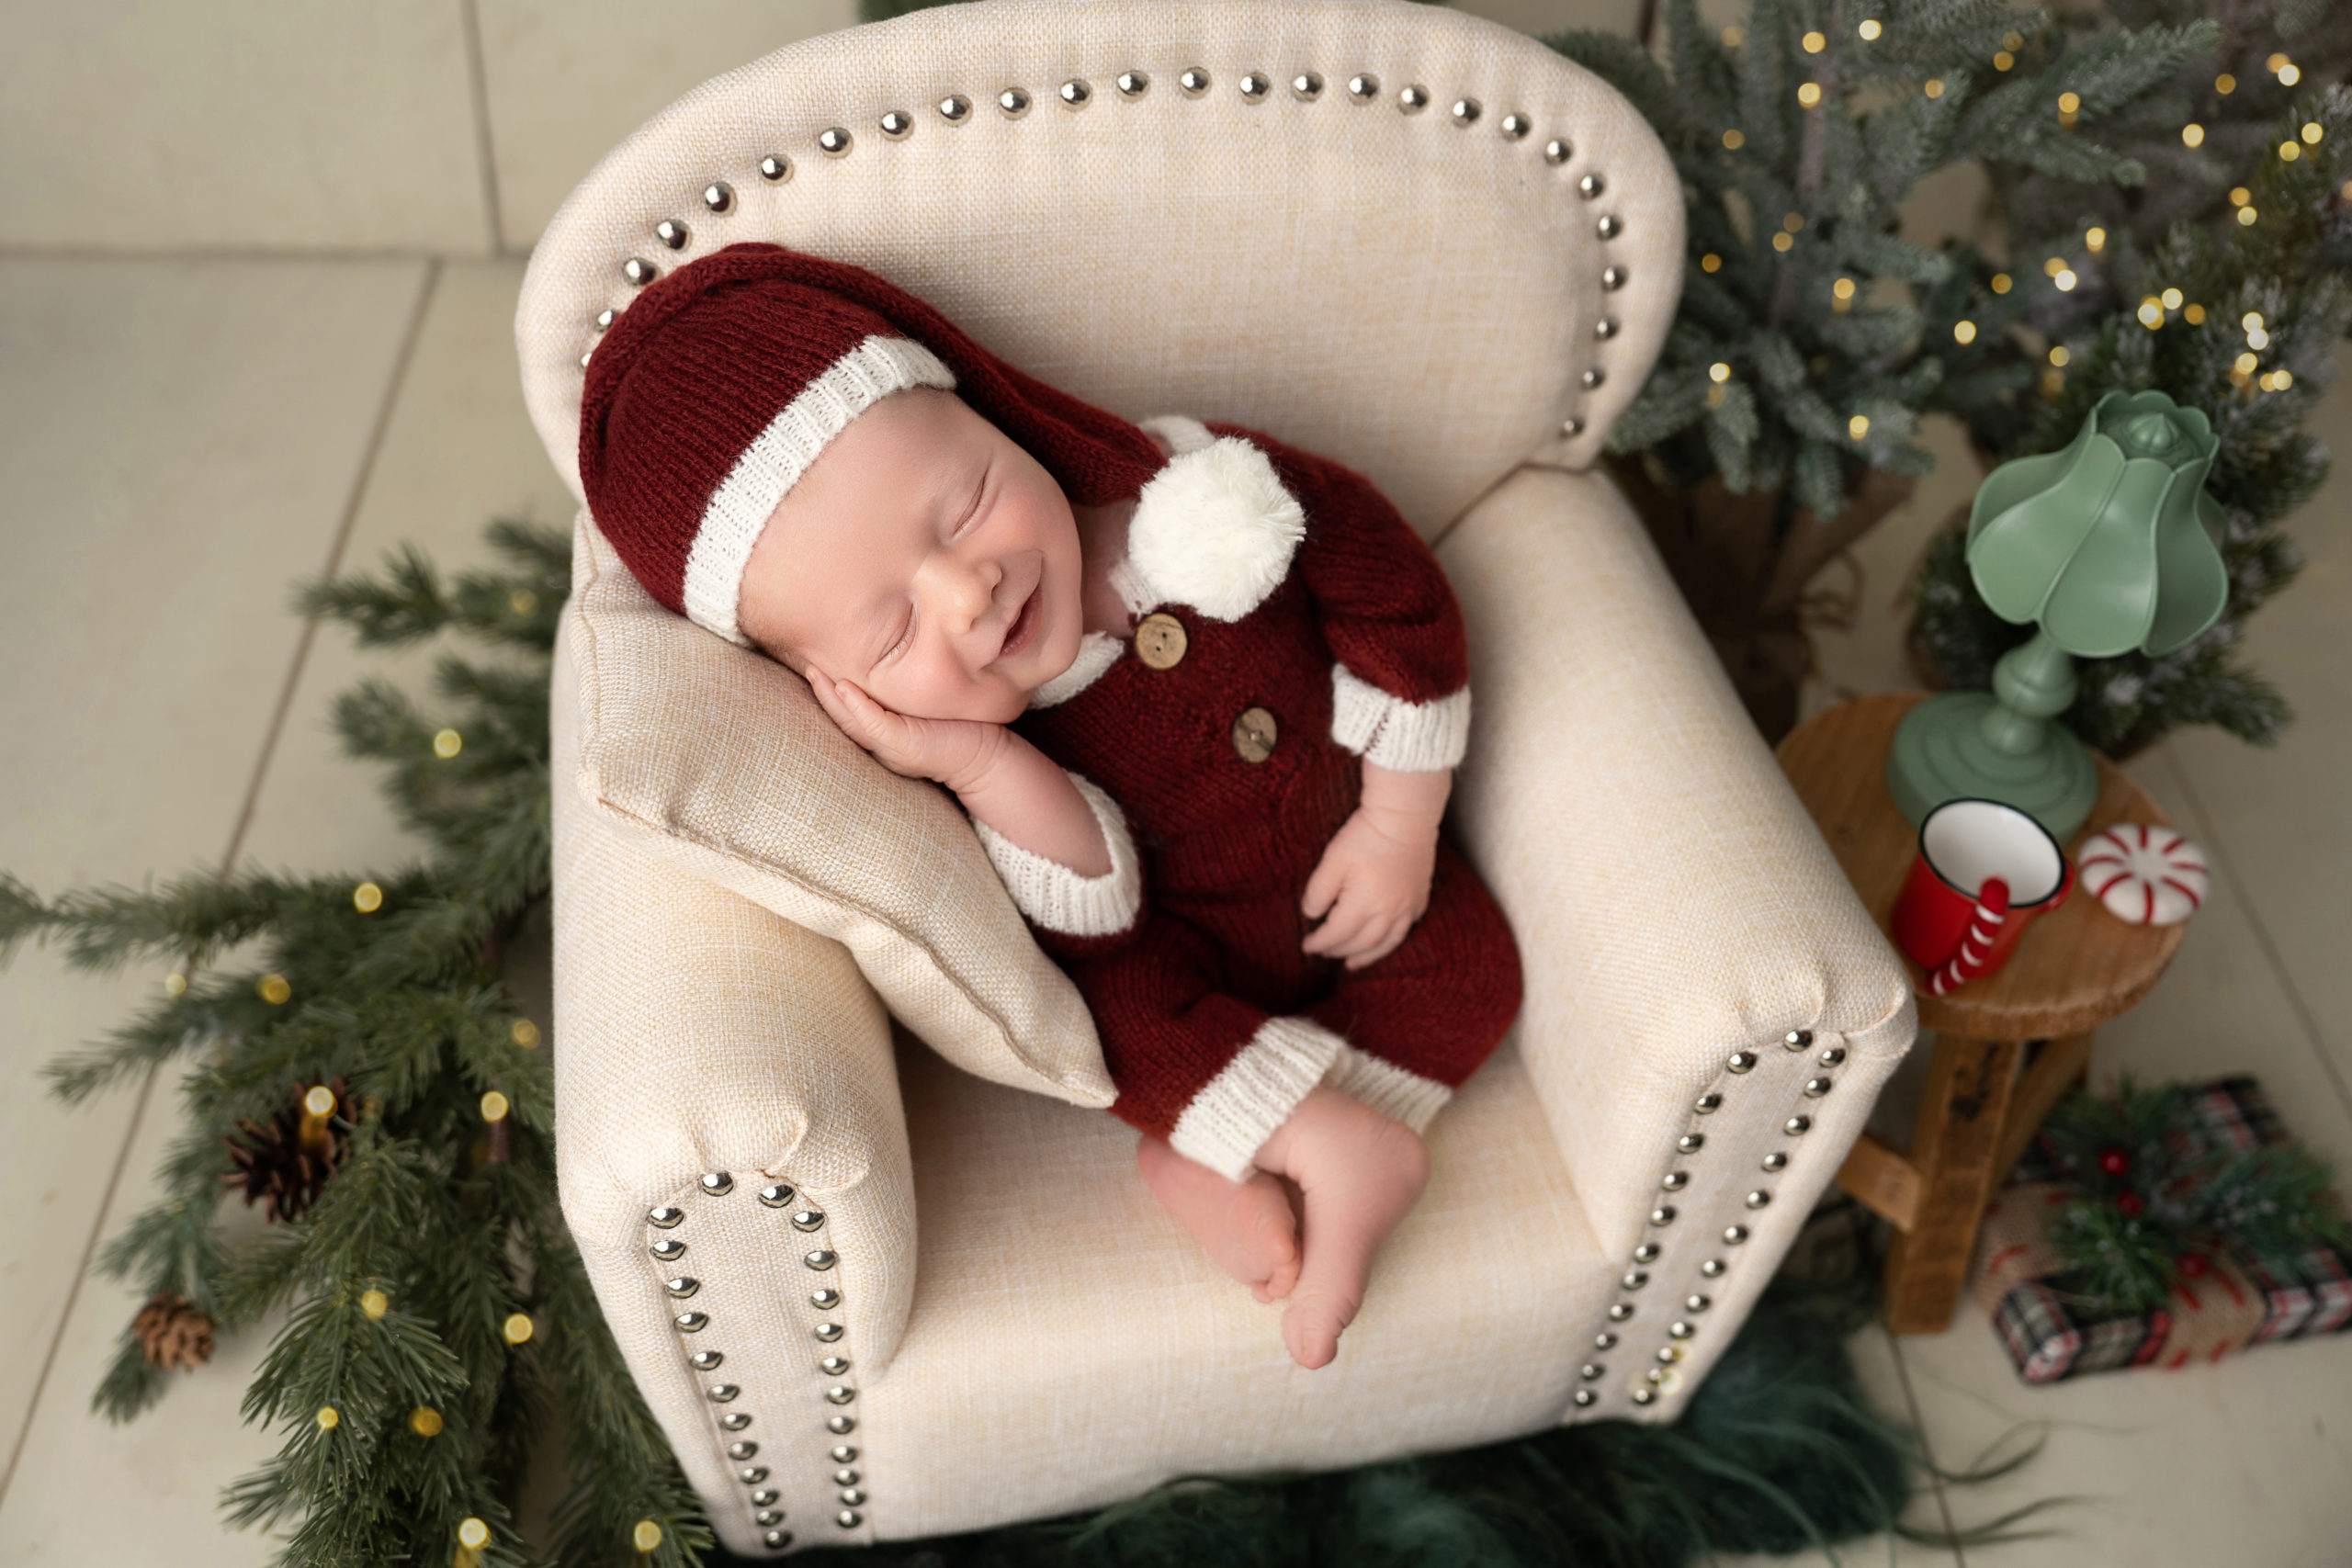 baby in armchair dressed as santa